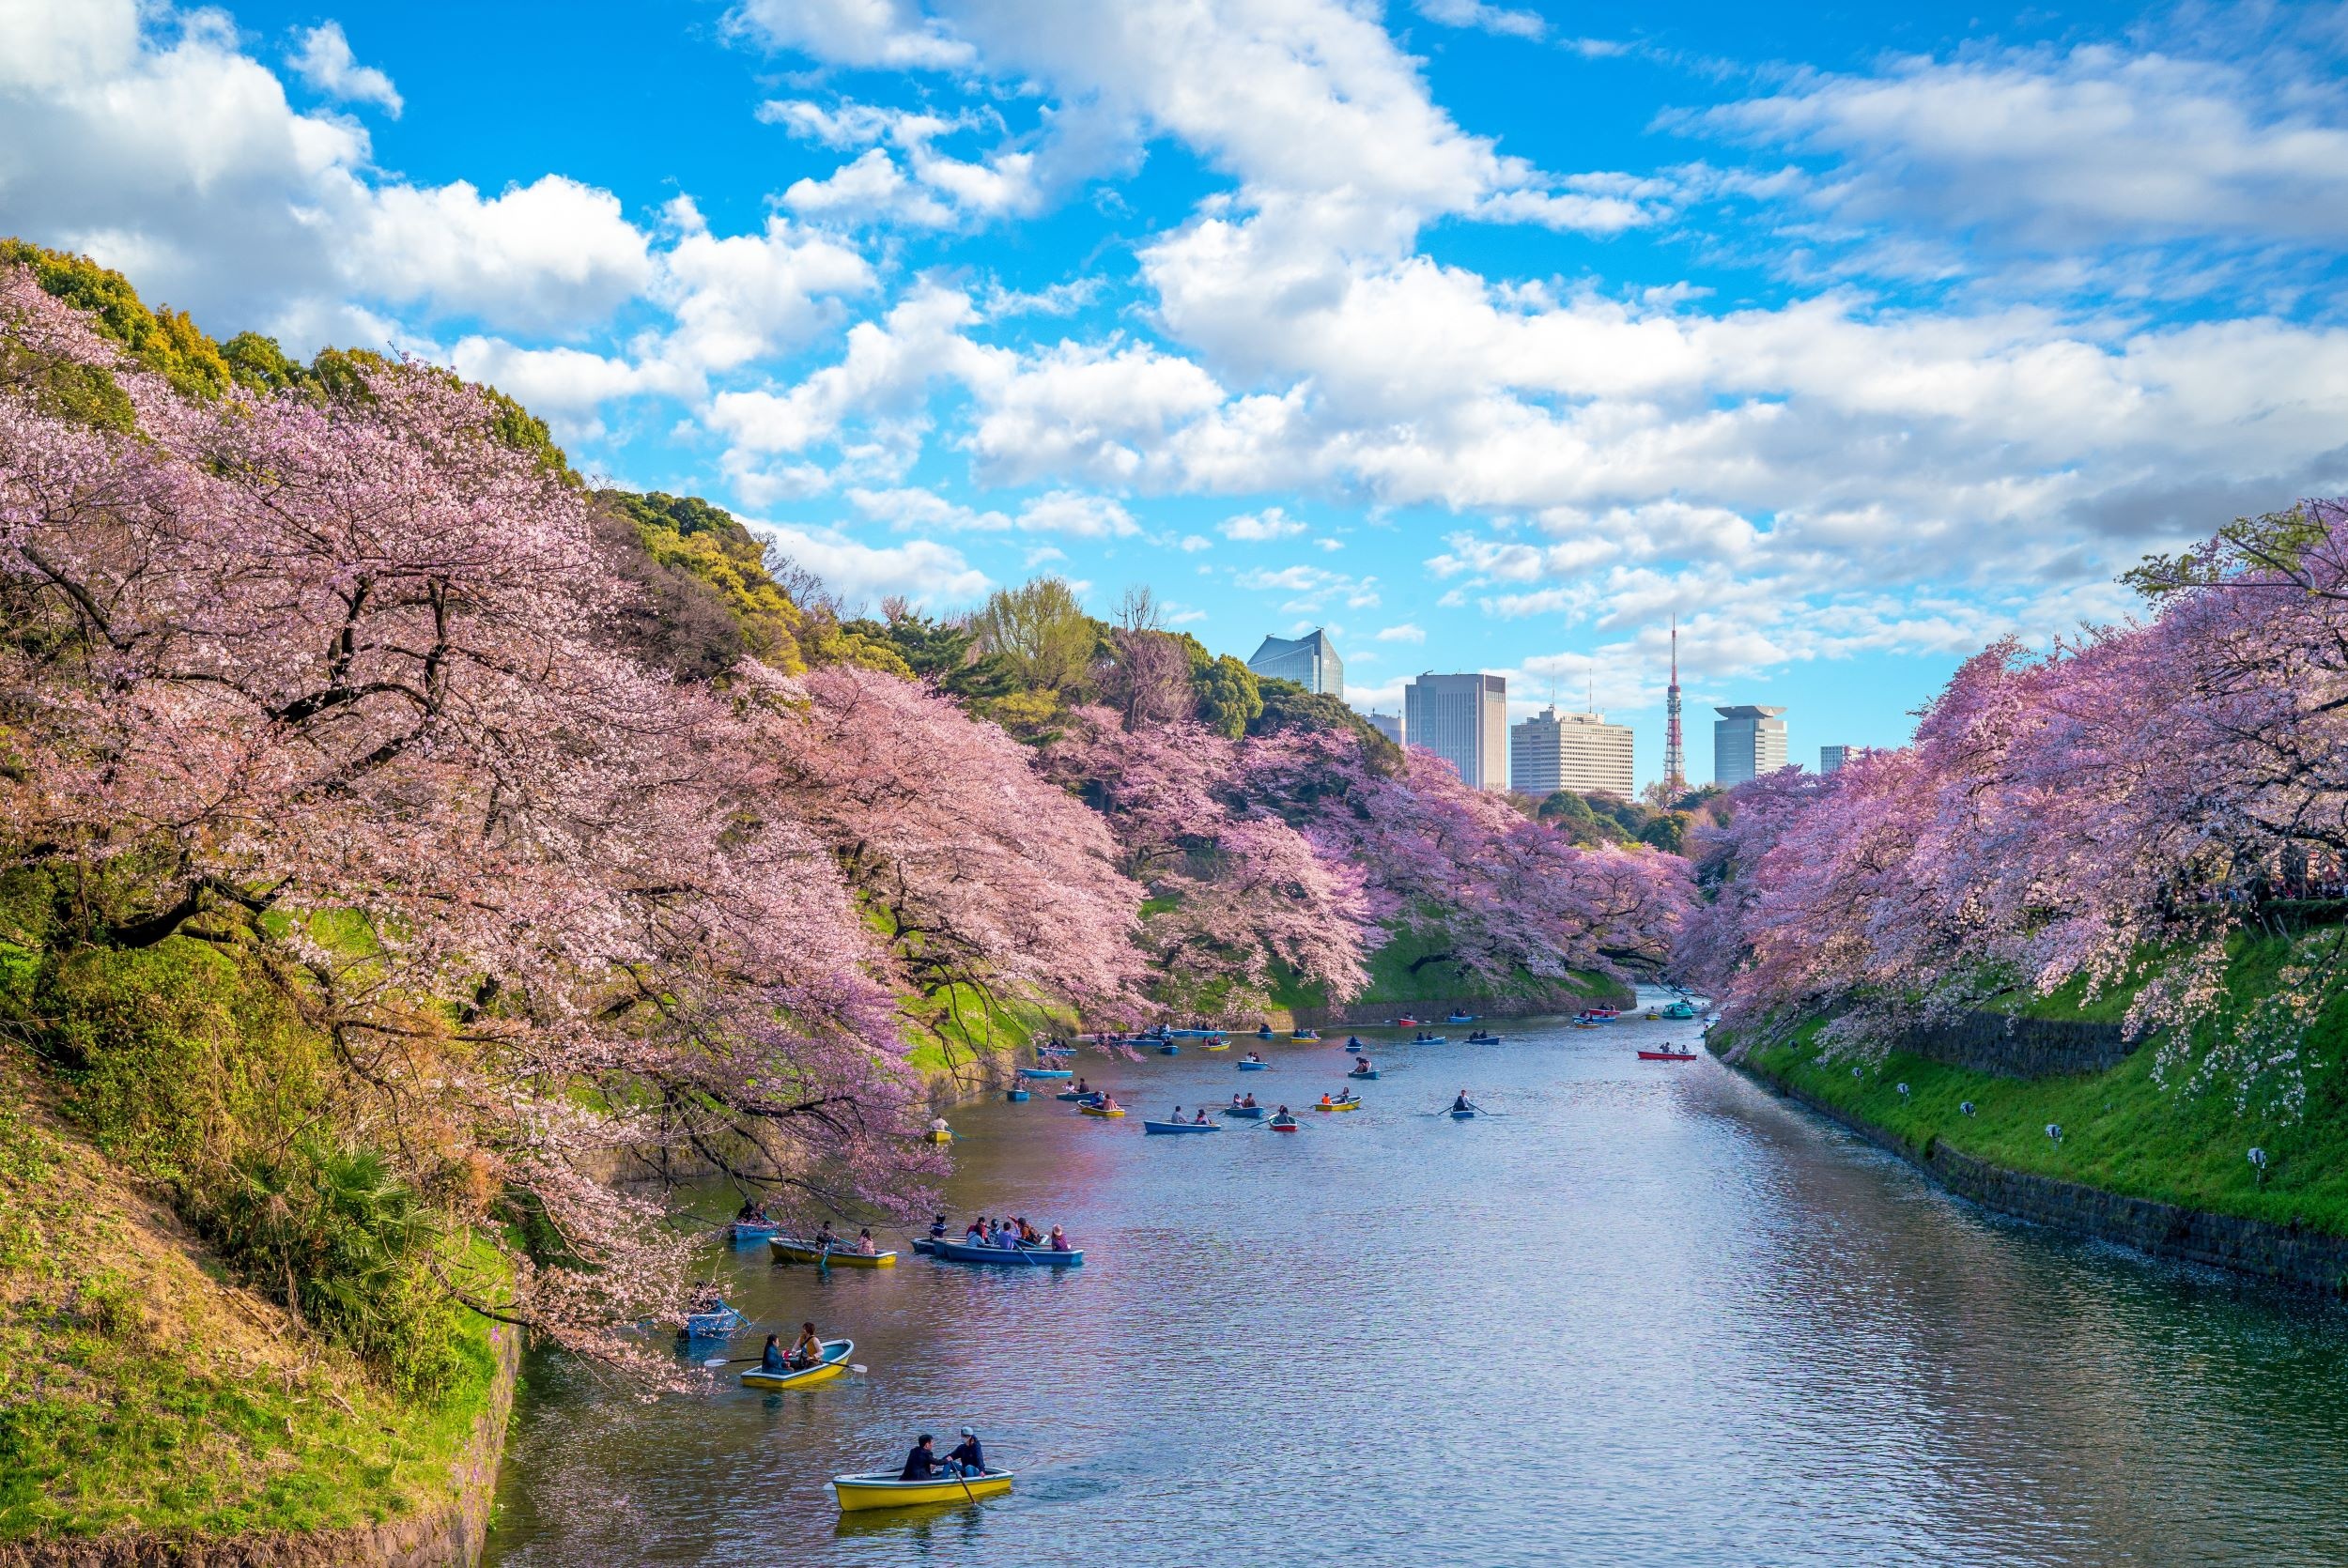 Nhật Bản, một trong những điểm đến thu hút du khách quốc tế